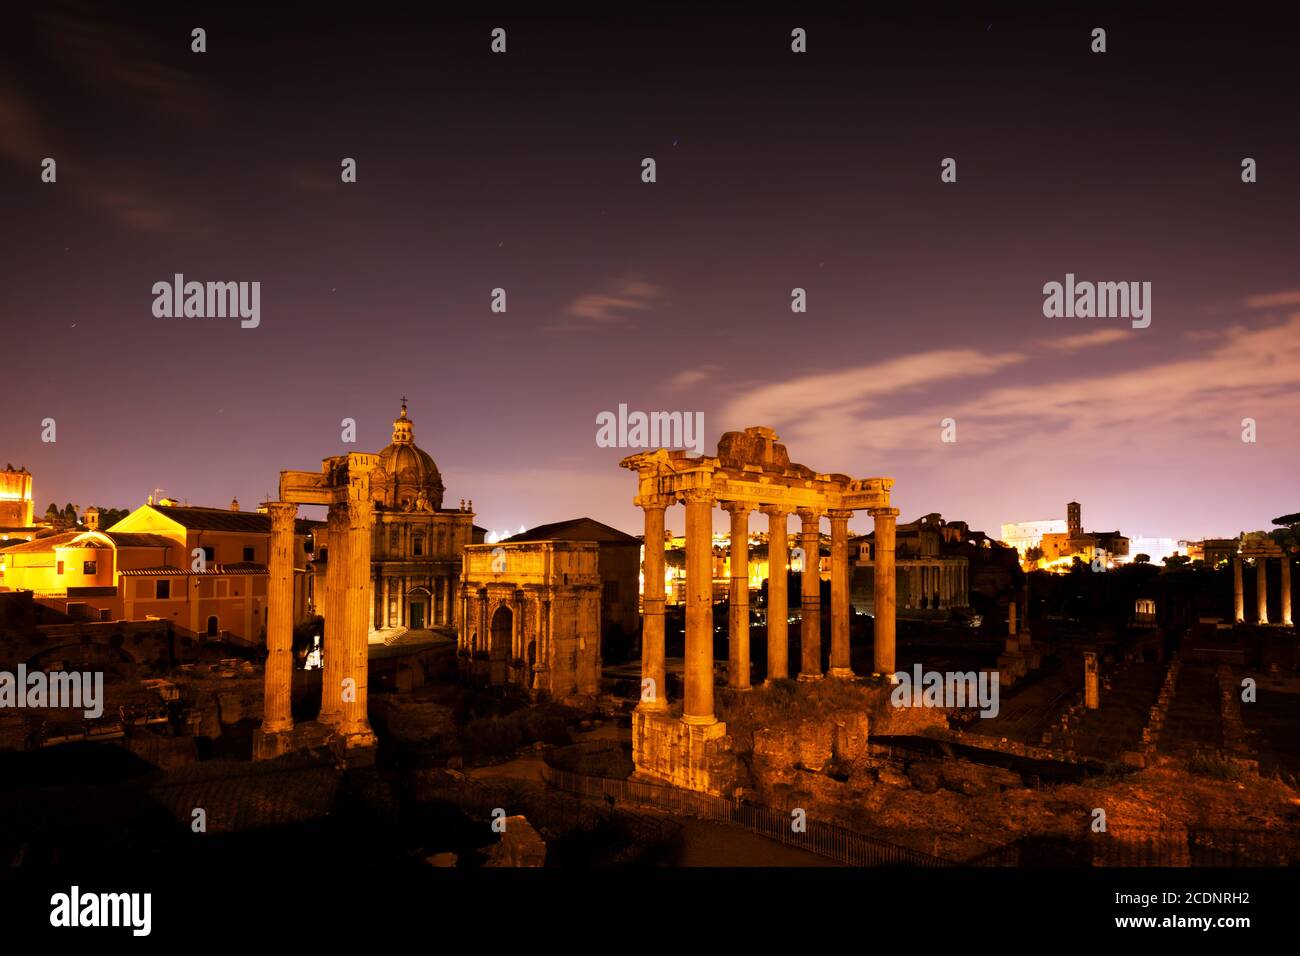 The Roman Forum, Italian Foro Romano in Rome, Italy at night. Stock Photo